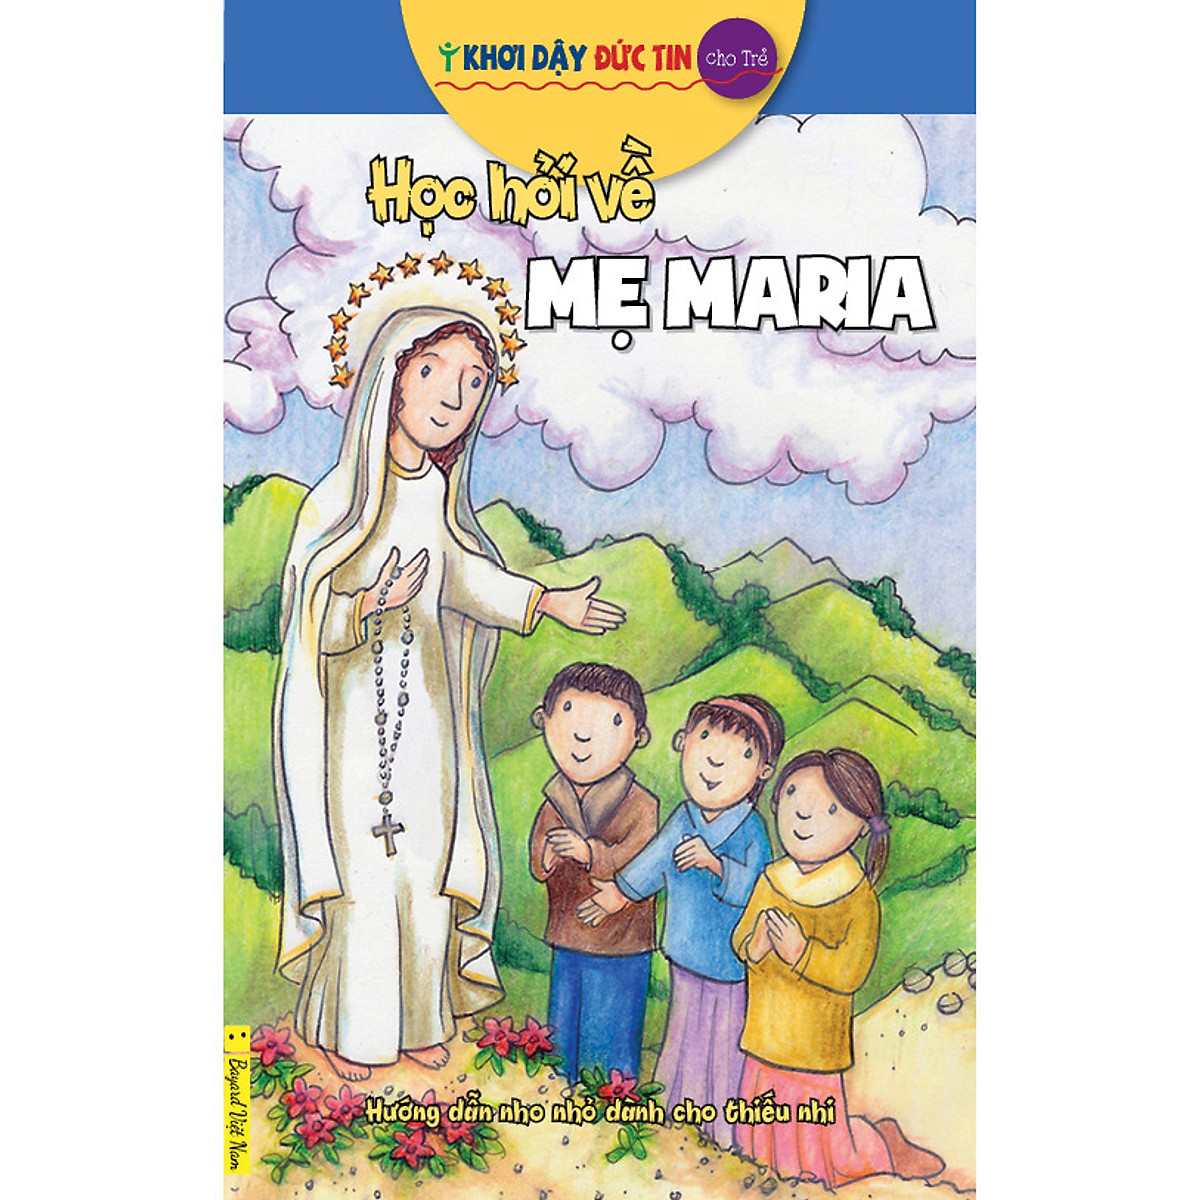 Sticker Học Hỏi Về Mẹ Maria - Sticker - Decal trang trí